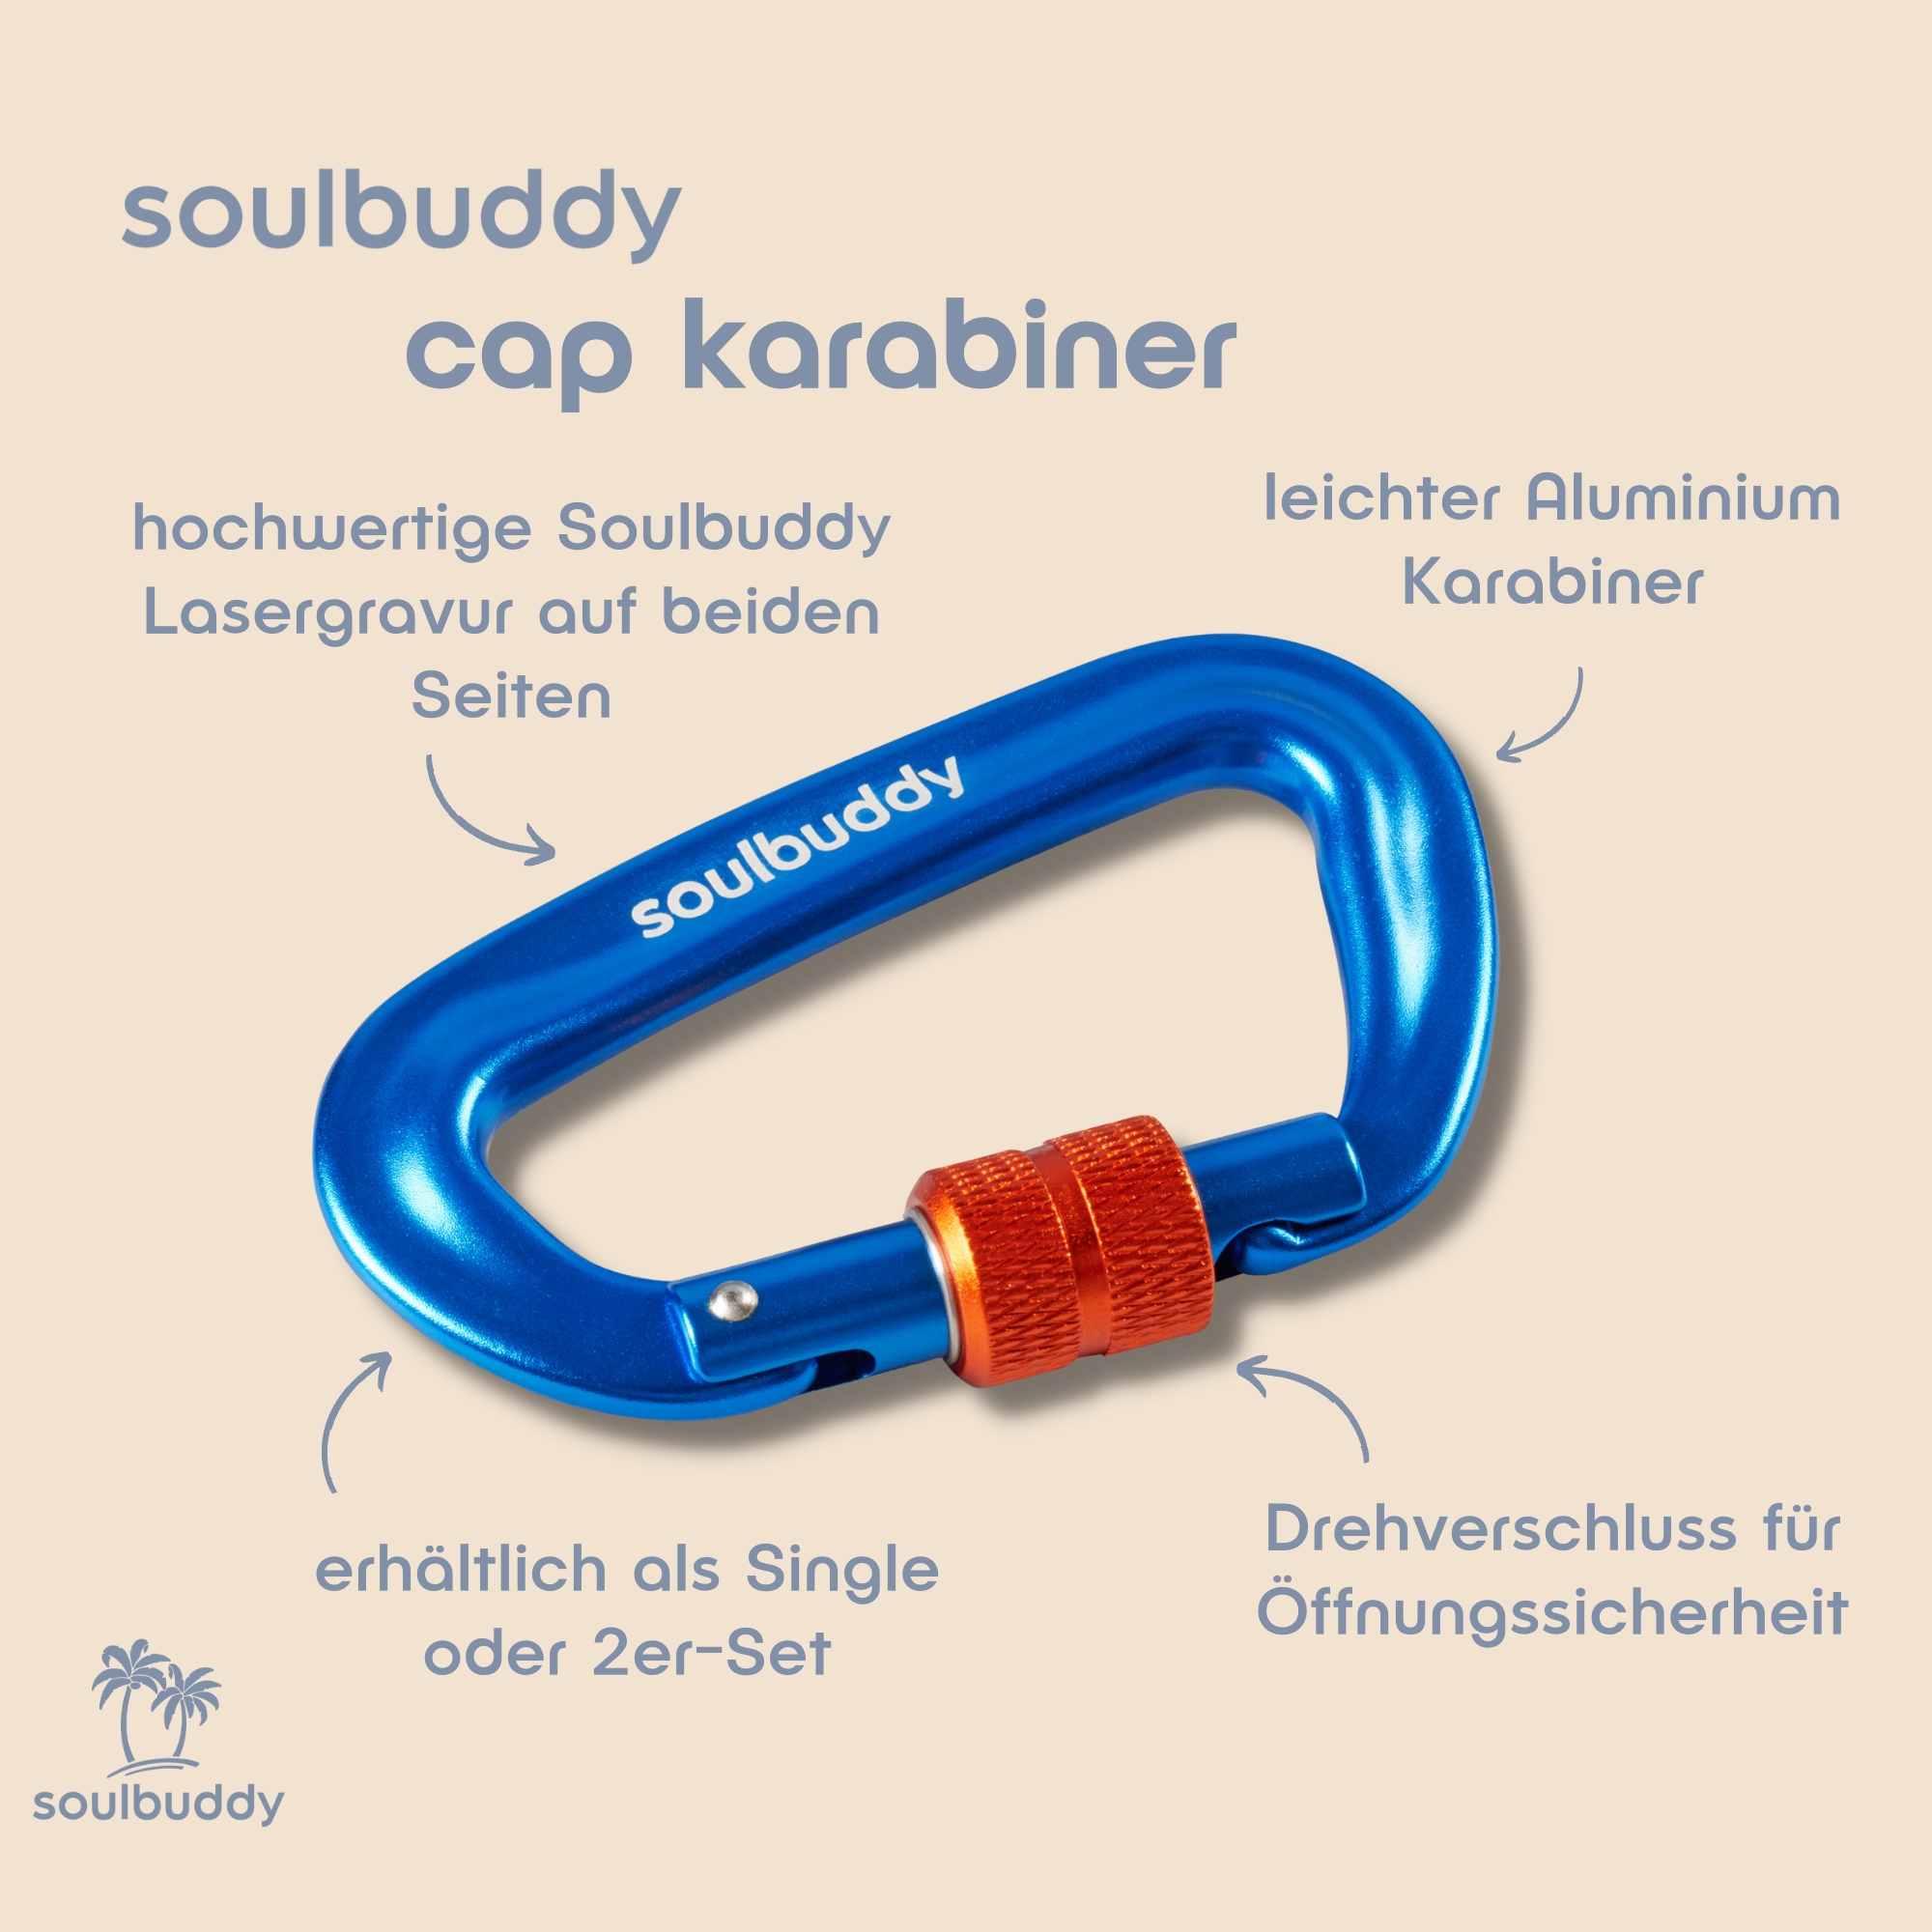 Soulbuddy Cap Karabiner mit Detailbeschreibung